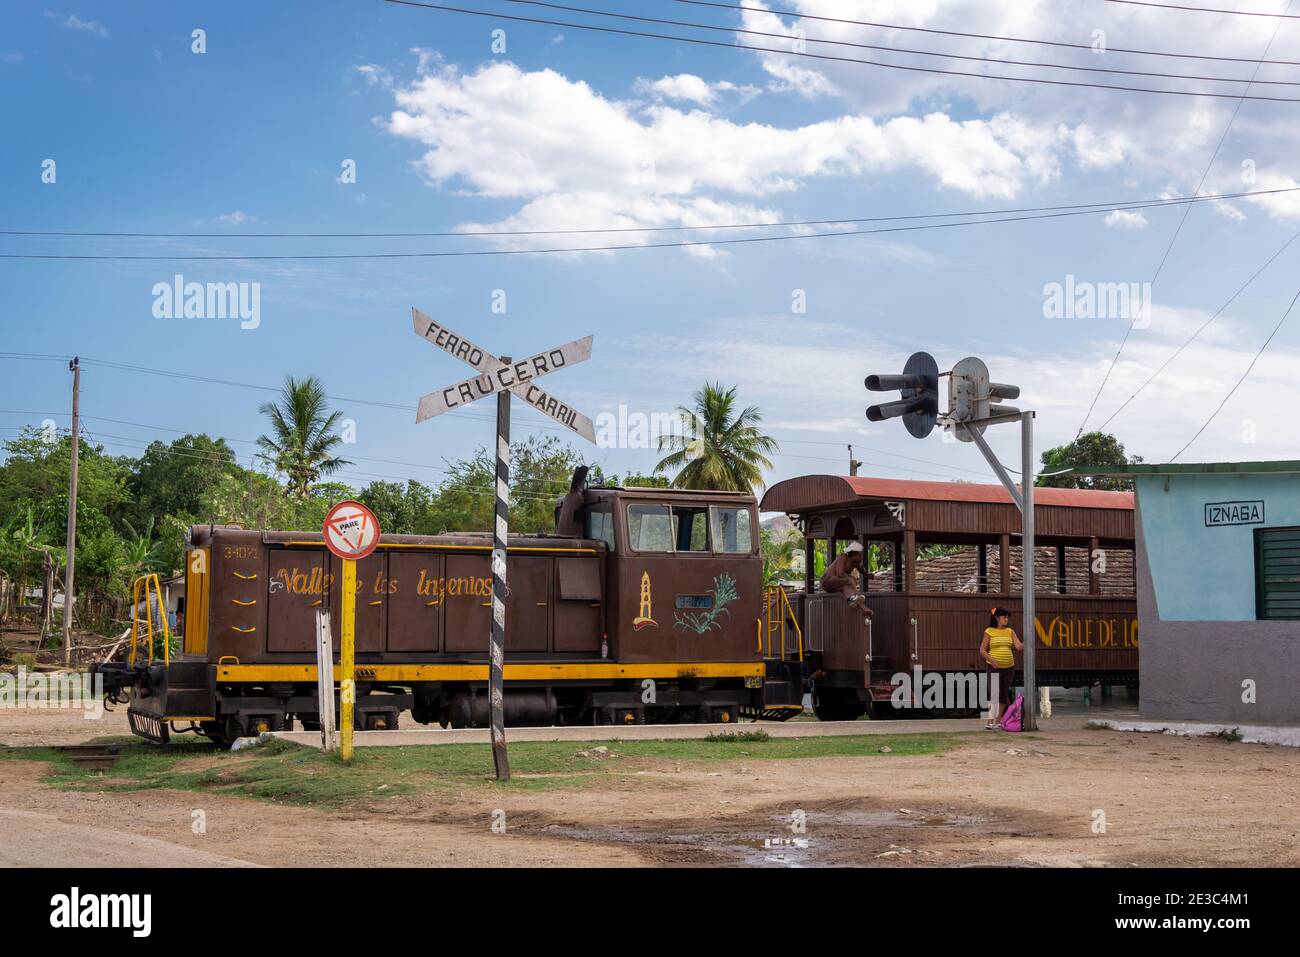 Alte Bahn im Tal der Ingenios oder Tal Der Zuckerfabriken in der Nähe von Trinidad in Kuba Stockfoto